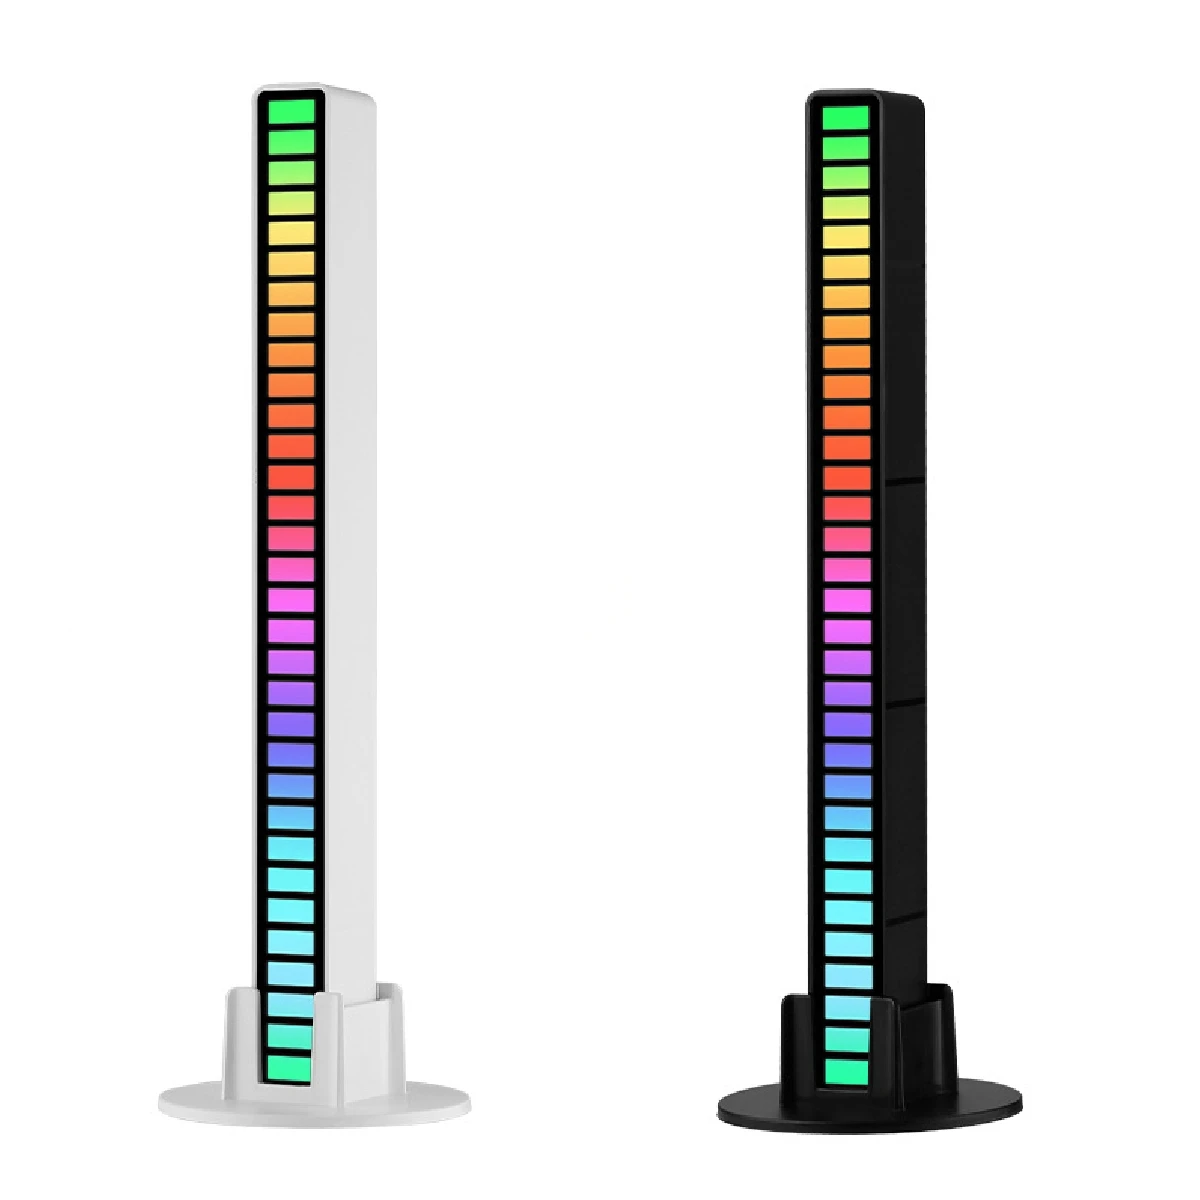 

RGB 32LED-лента для освещения помещений, лампа для управления звуком и музыкой, декоративная лампа для создания ритма окружающей среды, для бара, автомобиля, ТВ, игр